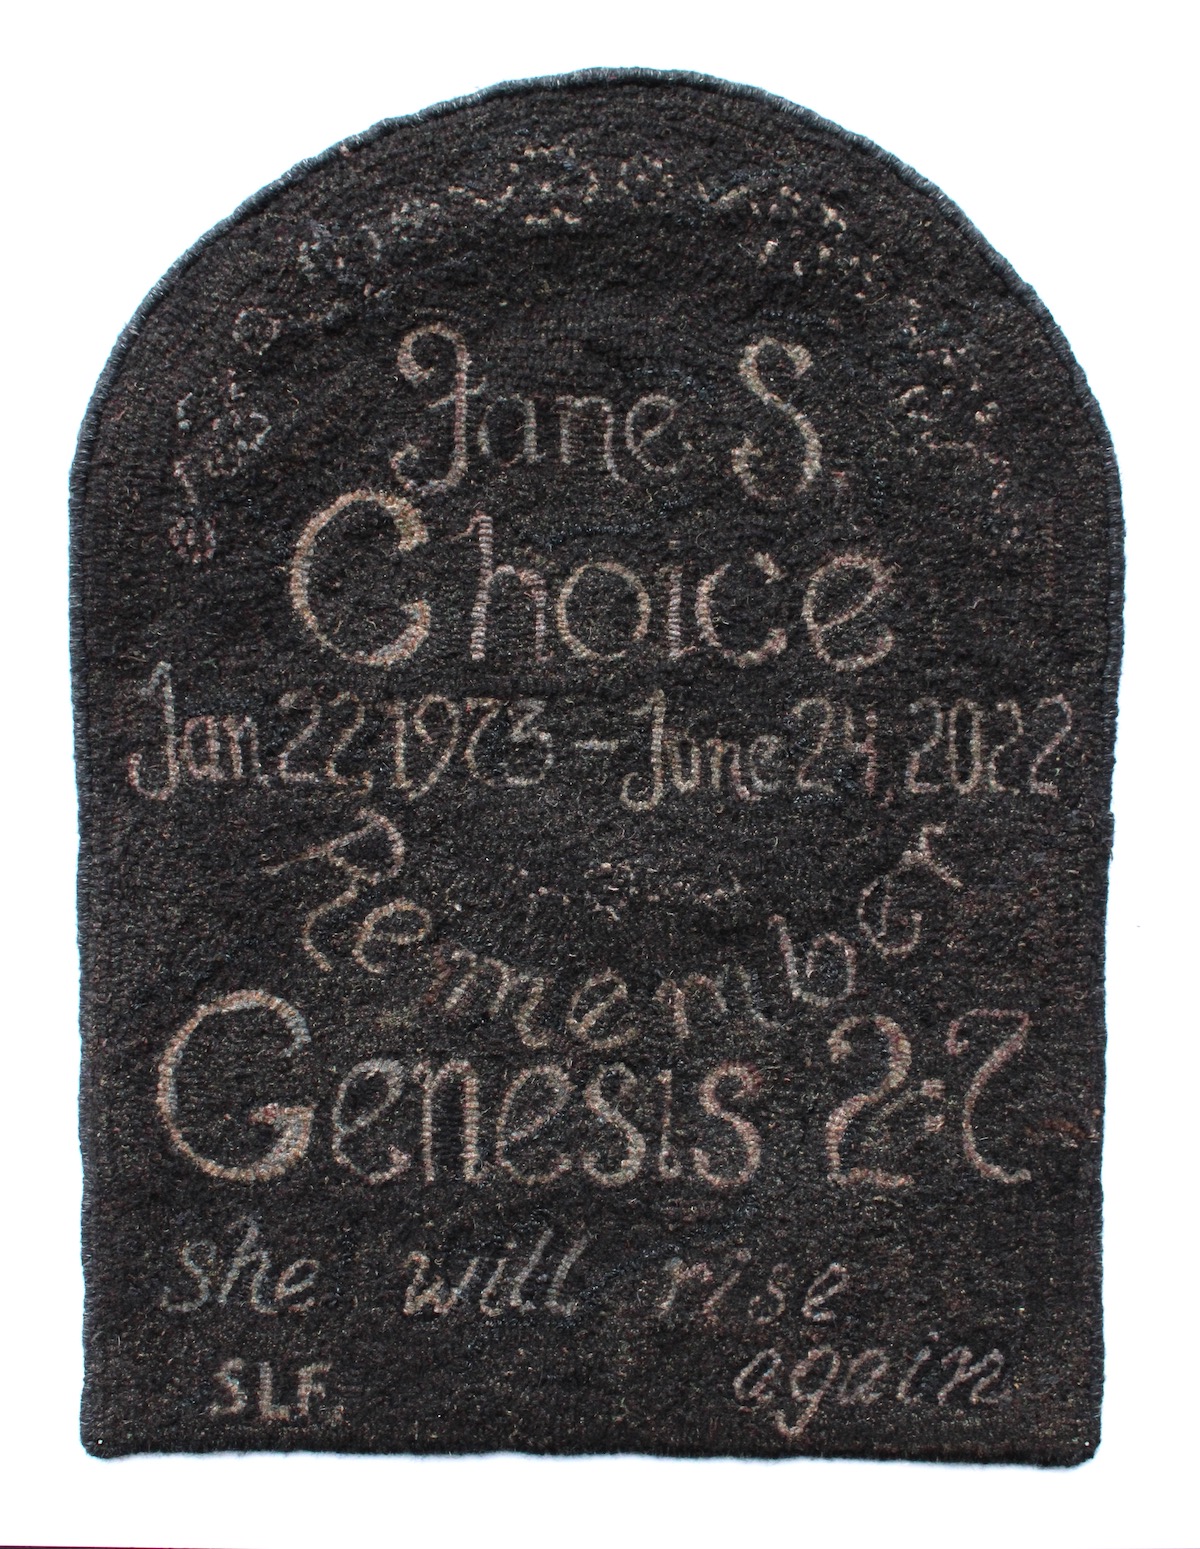 Jane S. Choice